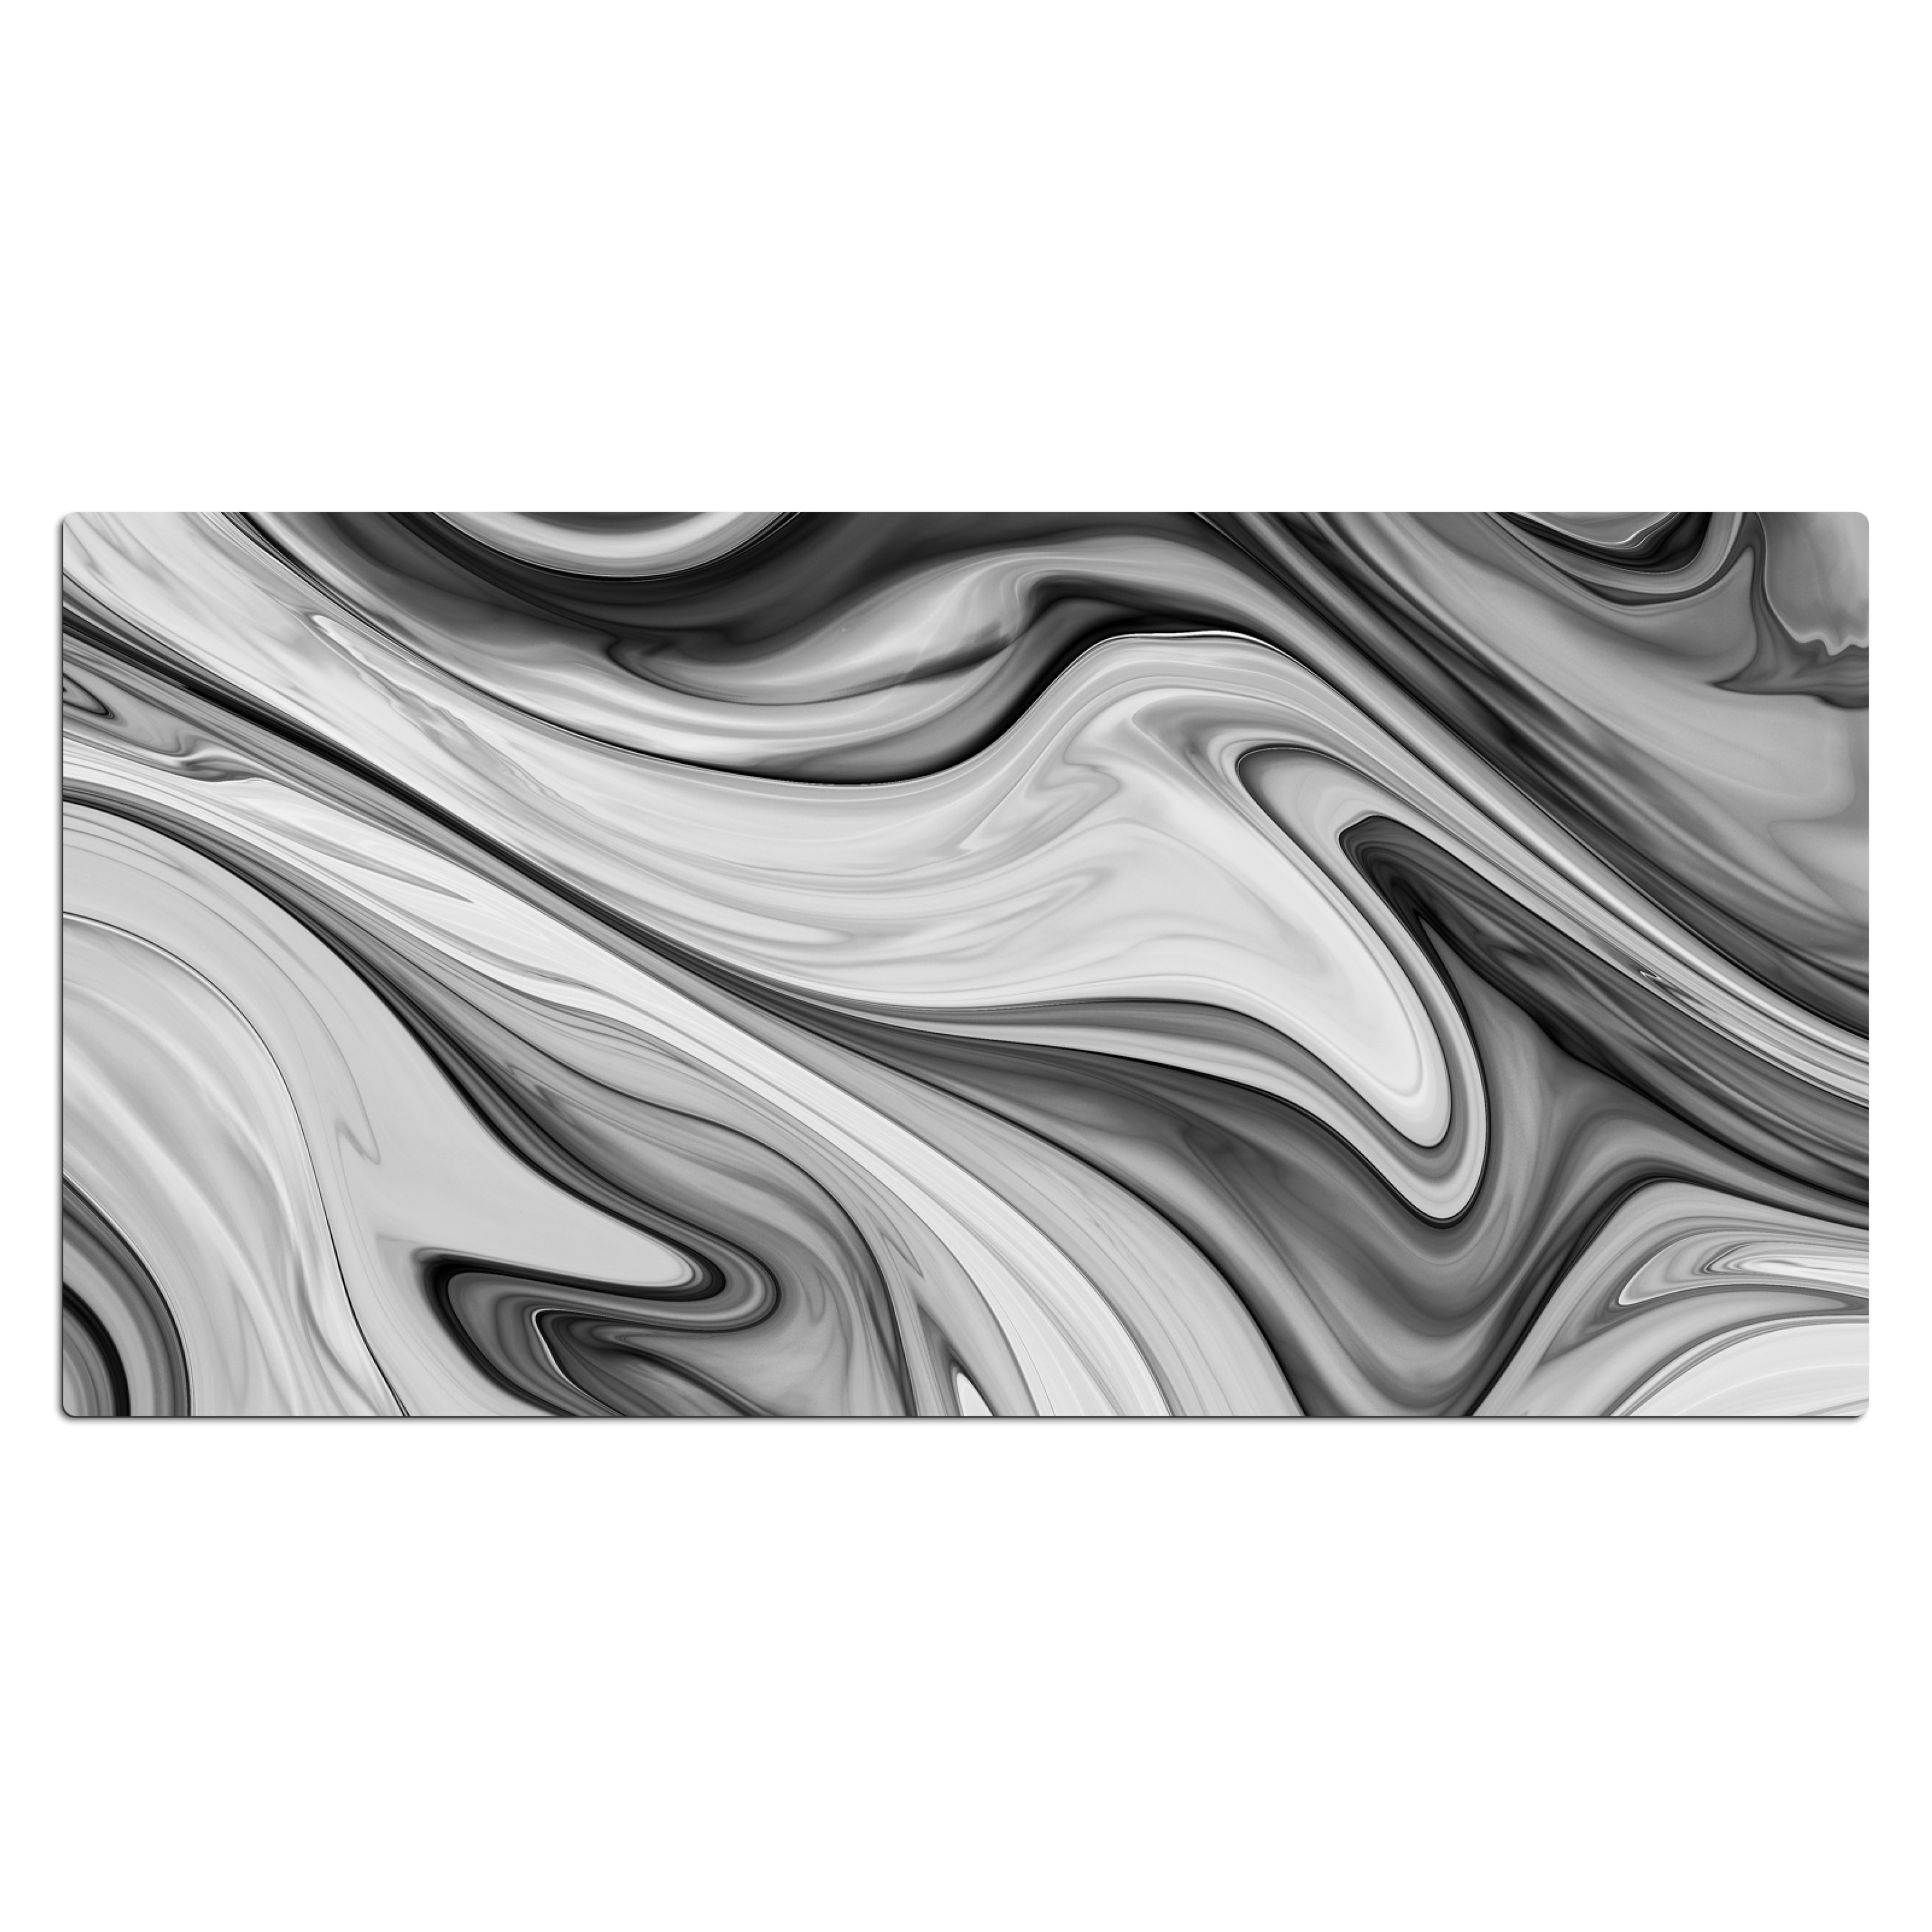 Schreibtischunterlage - Marmor - Muster - Grau - Marmoroptik - Schwarz